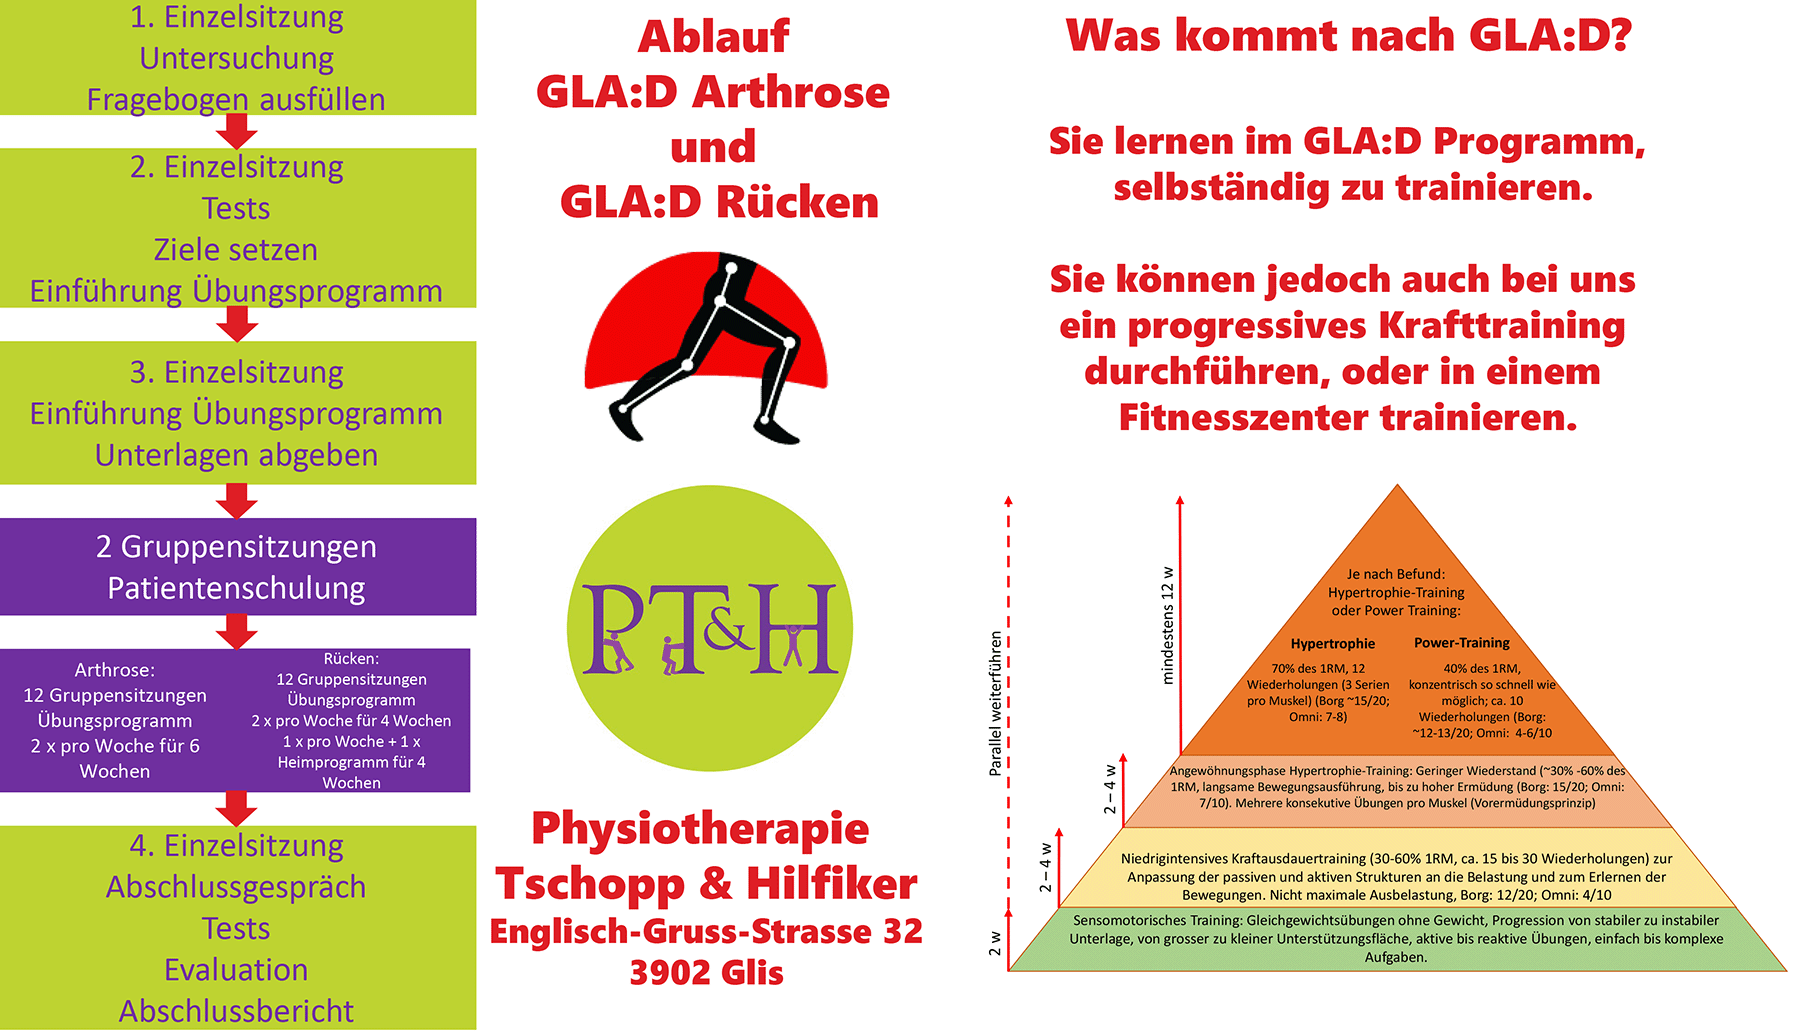 Ablauf der beiden GLAD Programme für Arthrose und Rückenschmerzen in der Physiotherapie Tschopp und Hilfiker.